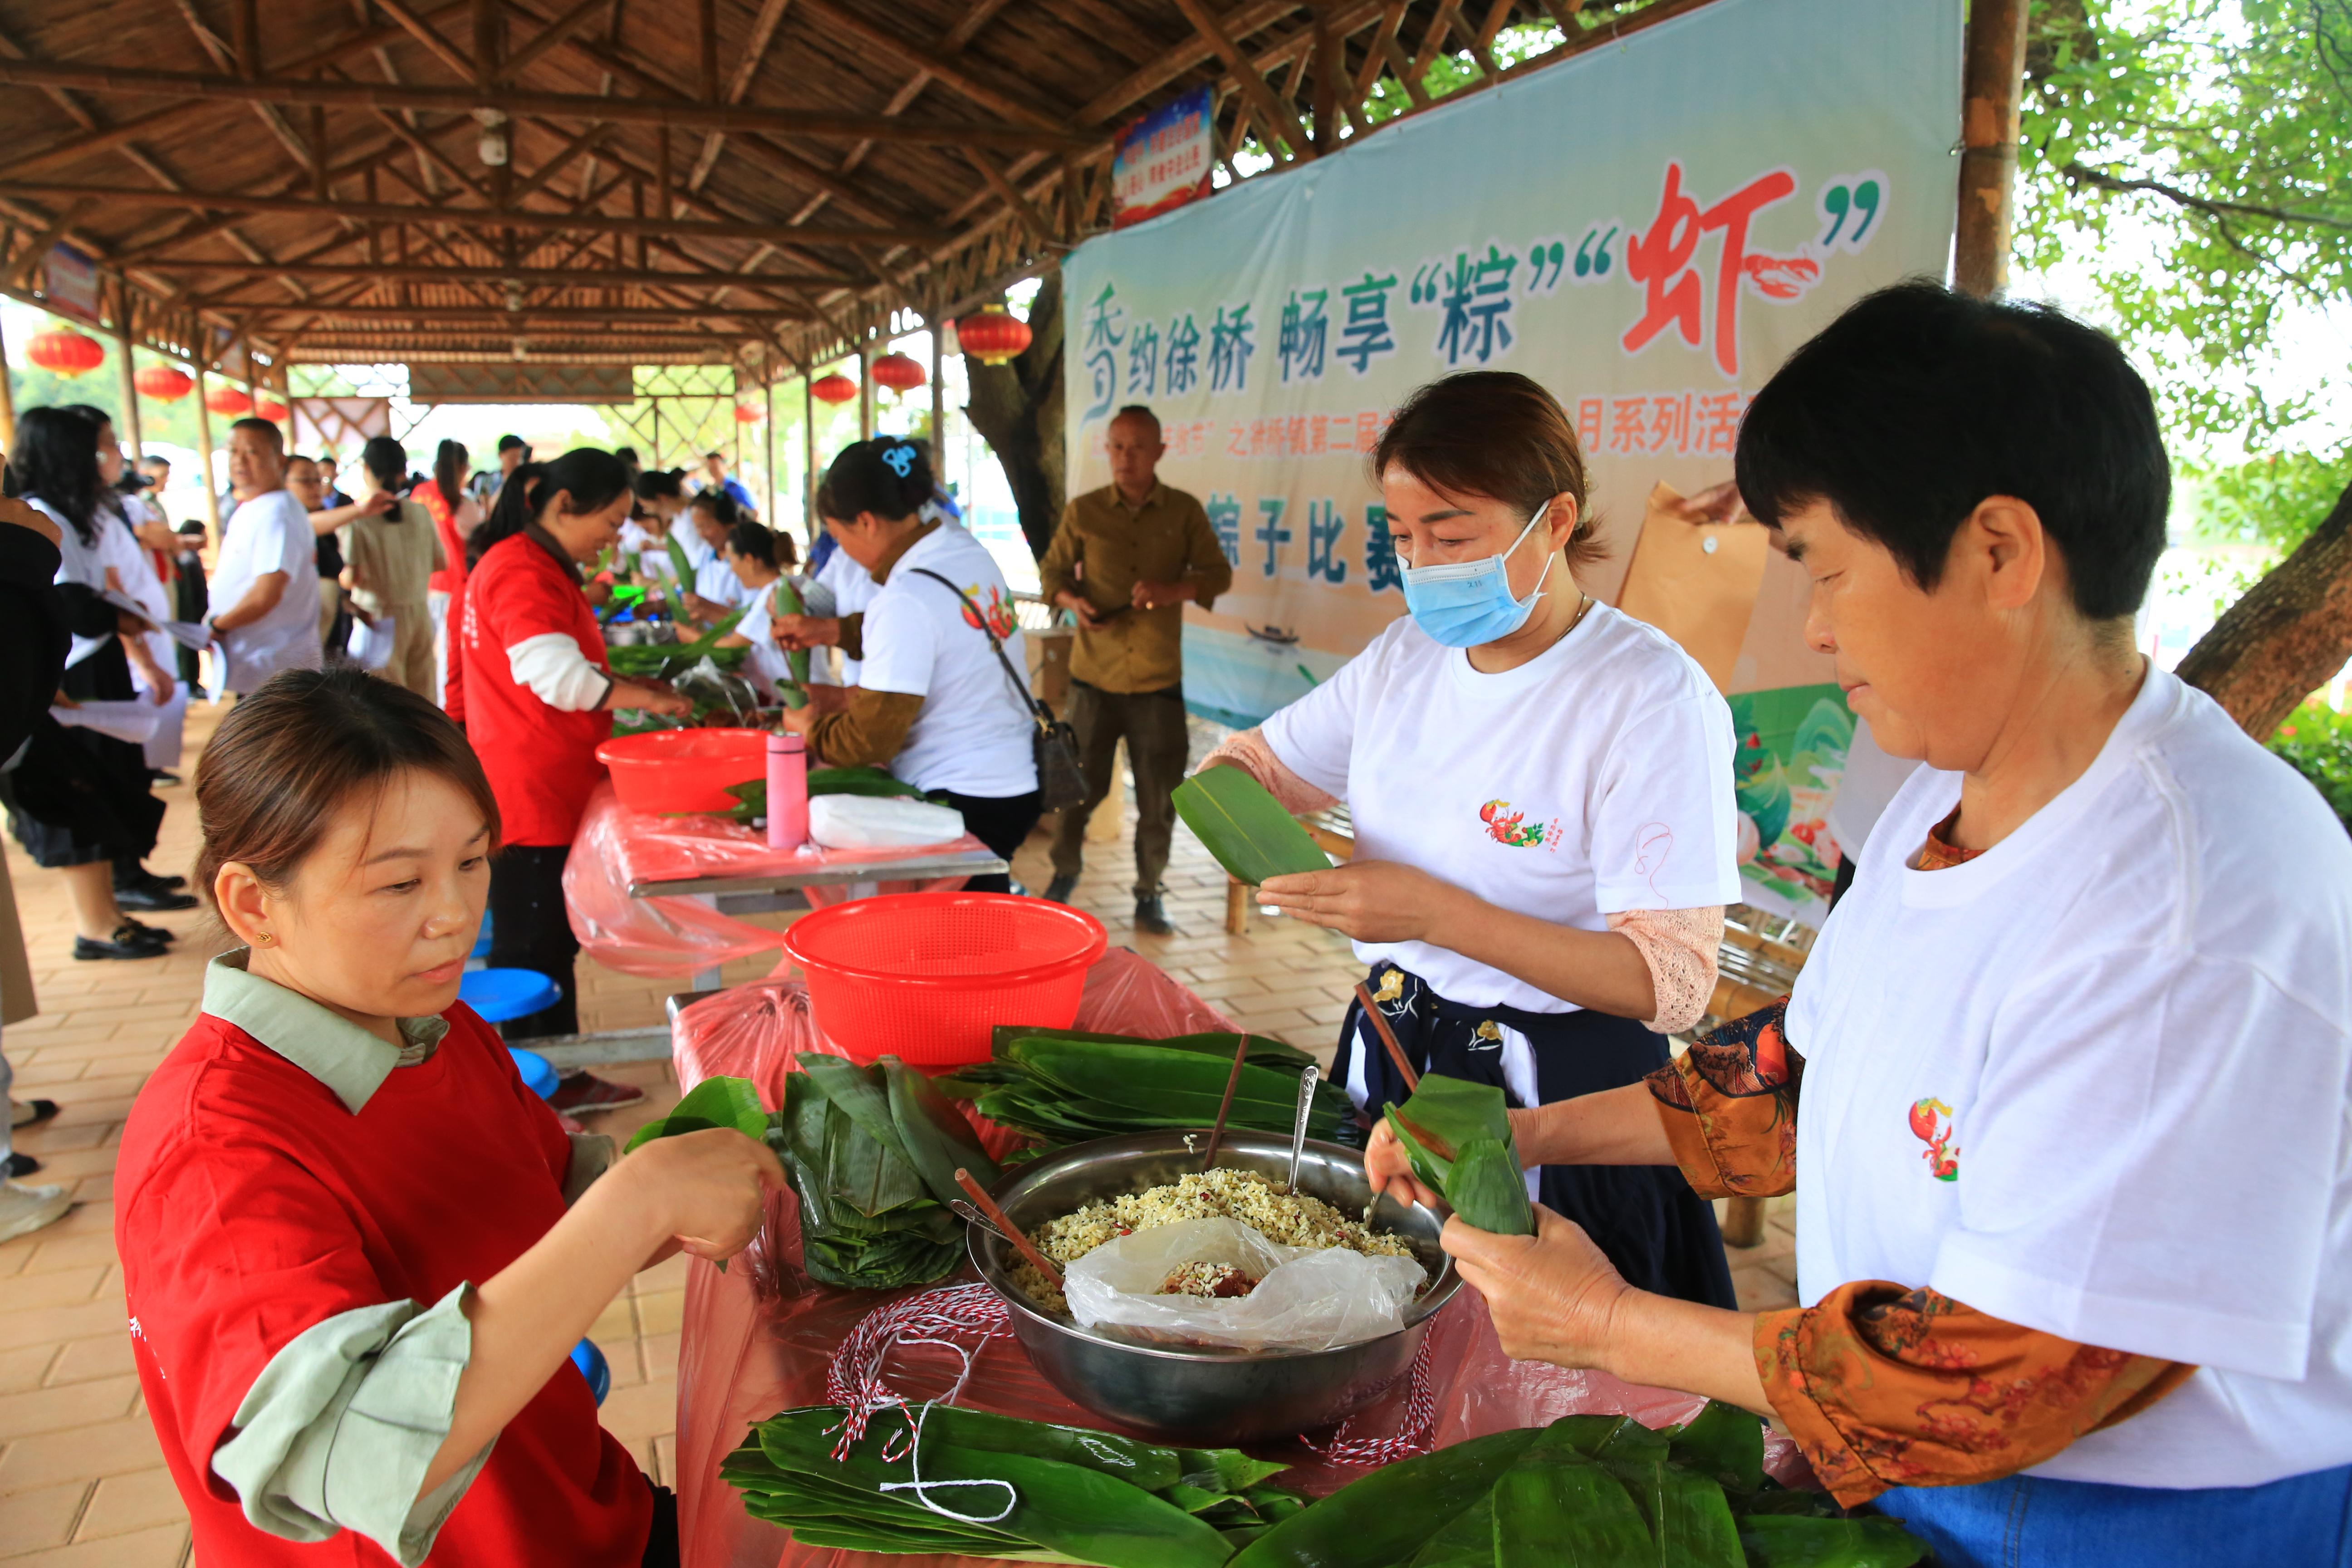 安徽省太湖县徐桥镇市民在开展包粽子比赛。刘辉摄